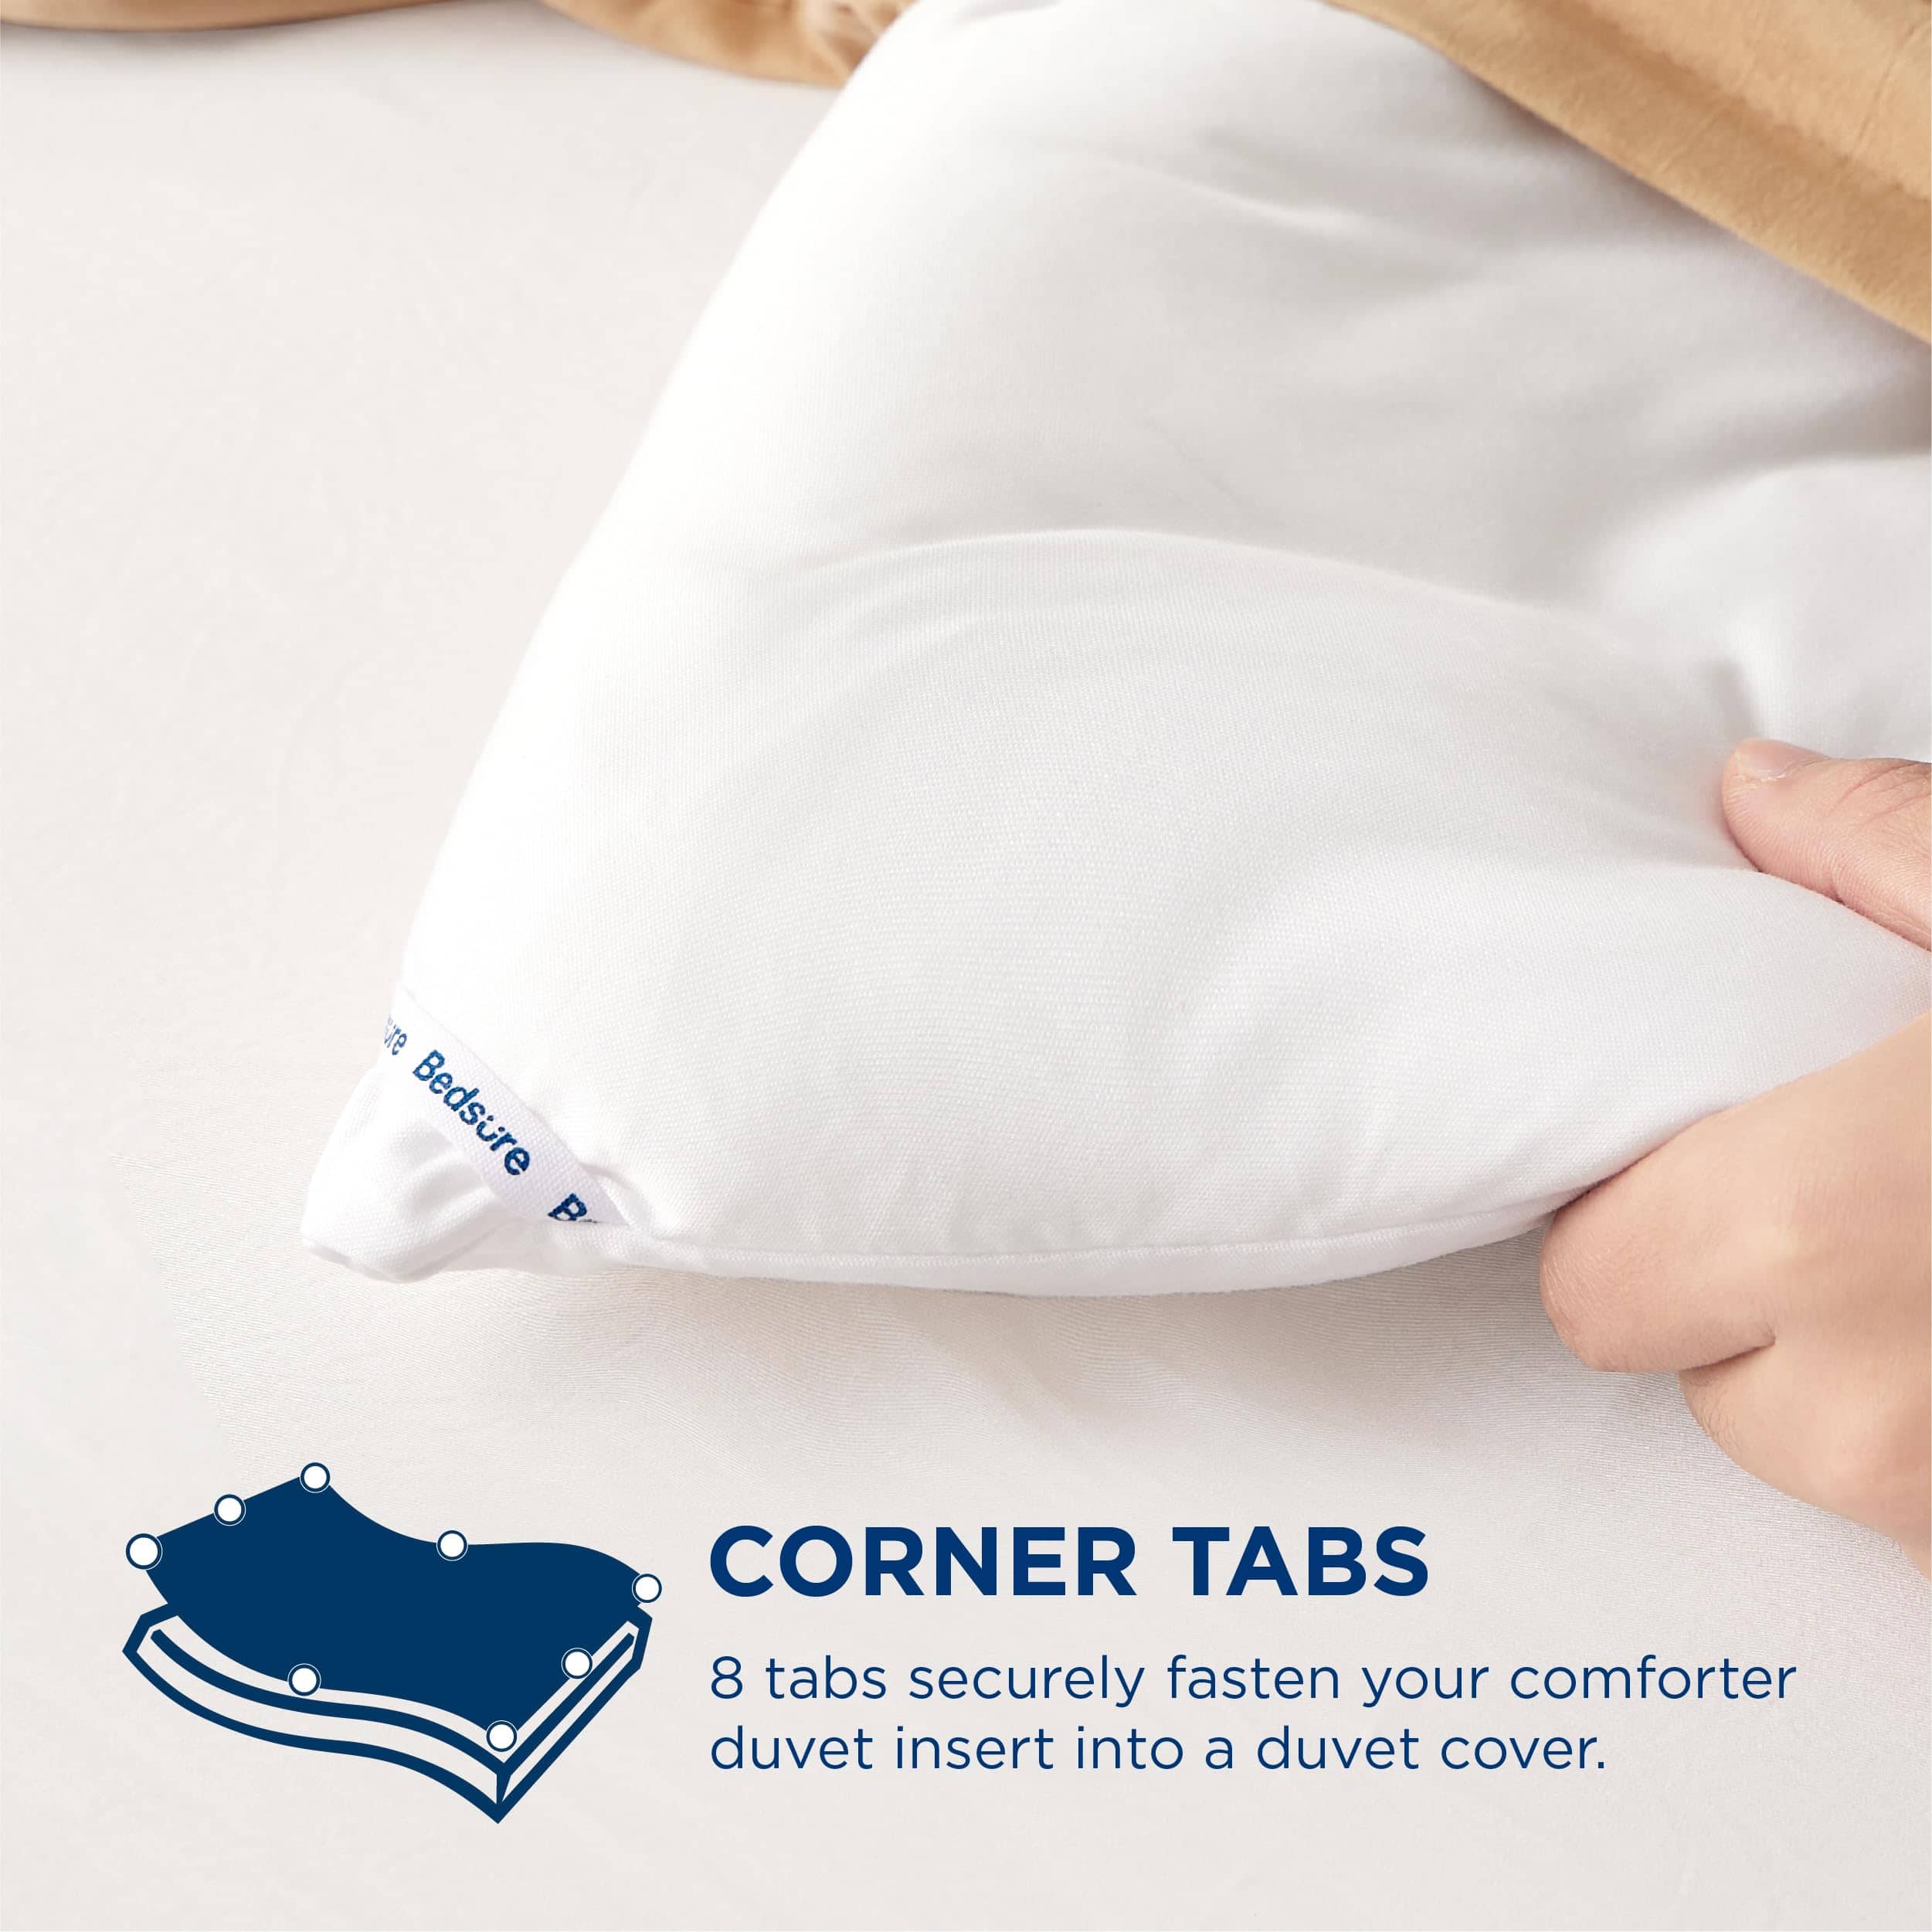 Bedsure Duvet Insert ULTRA-SOFT 270gsm Comforter